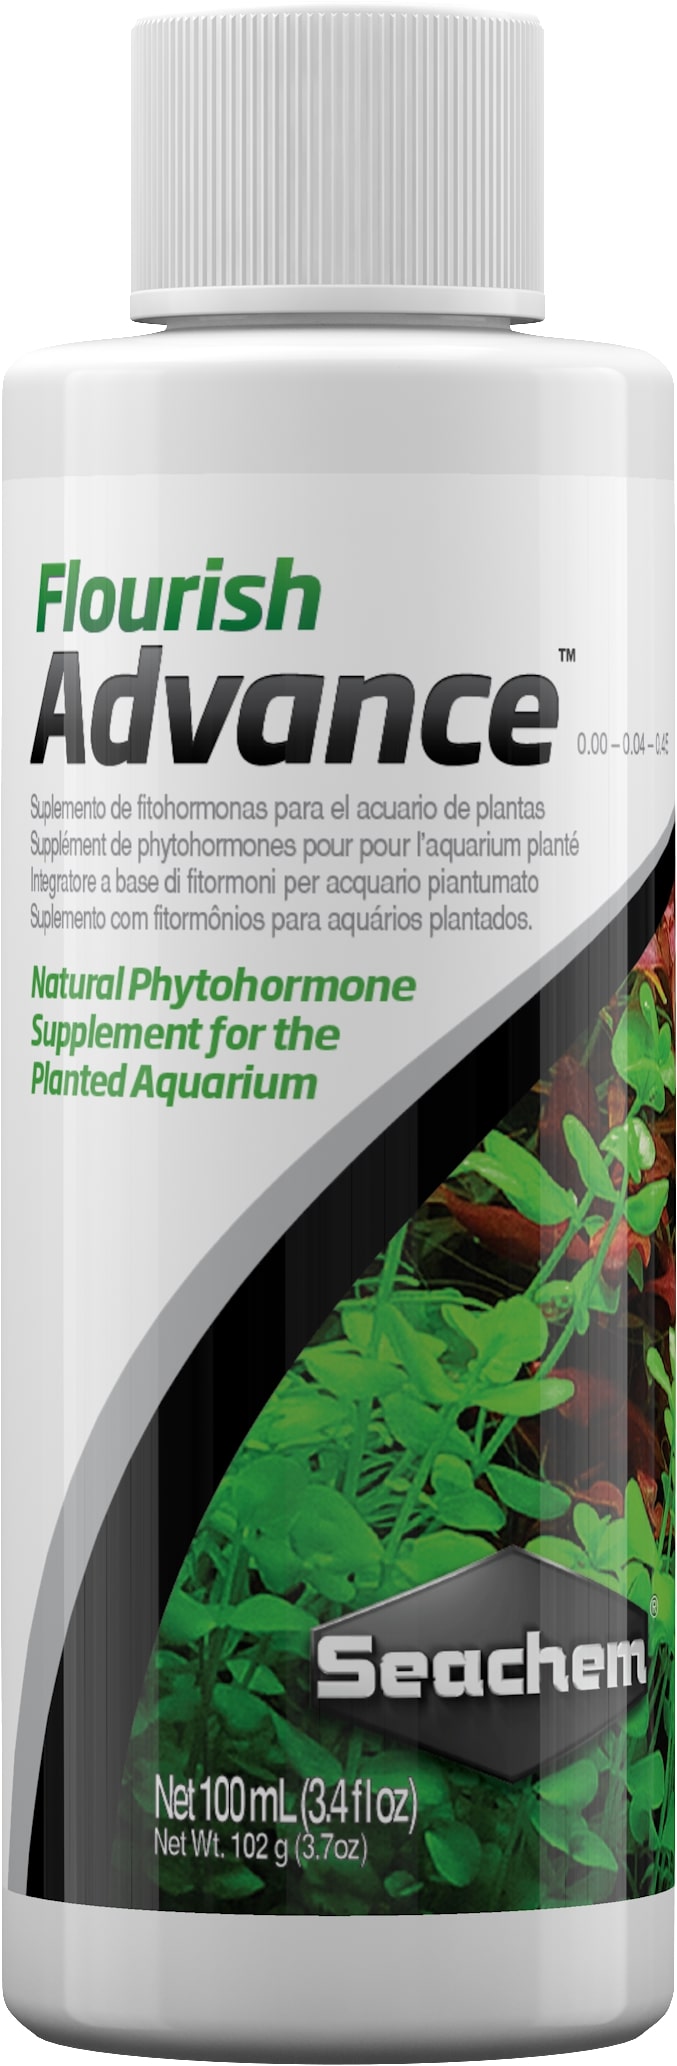 seachem-flourish-advance-100-ml-supplement-de-phytohormones-naturelles-pour-booster-la-croissance-des-plantes